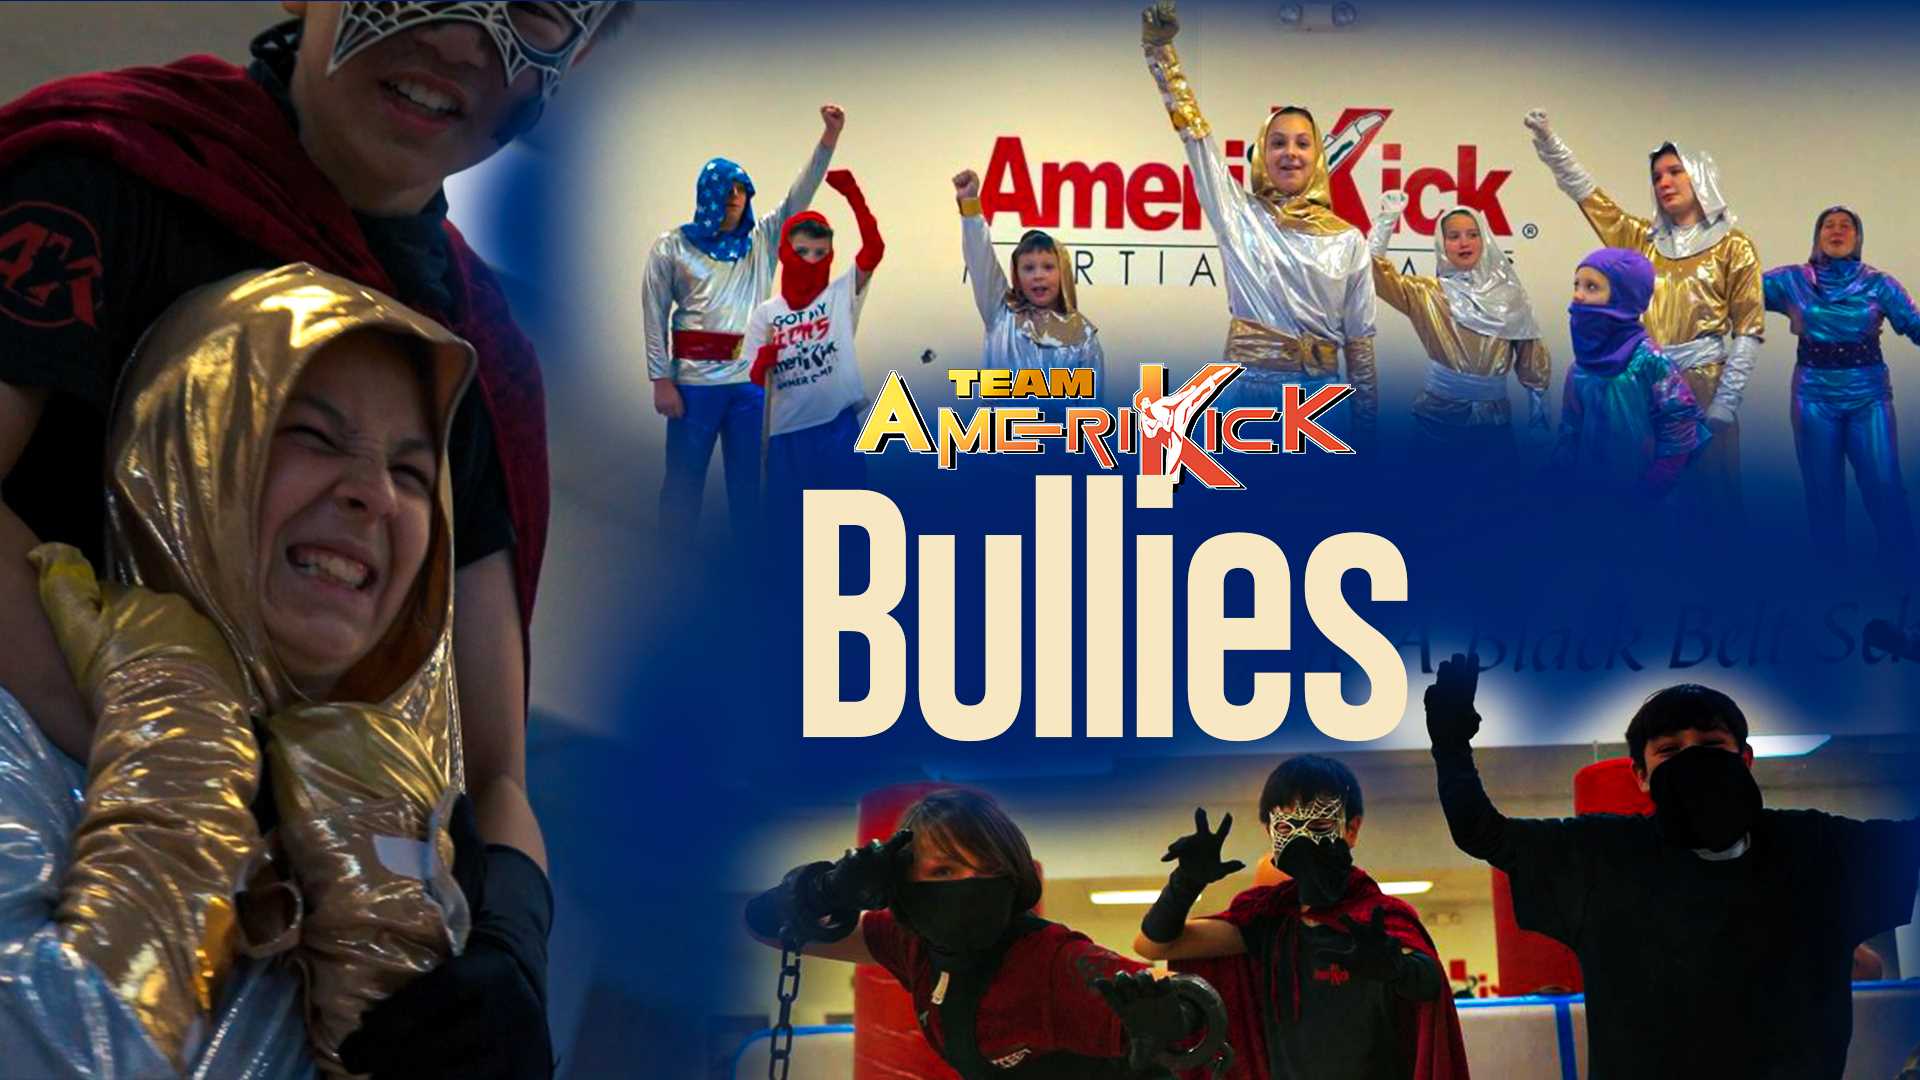 Amerikick Action | Team AmeriKick: BULLIES